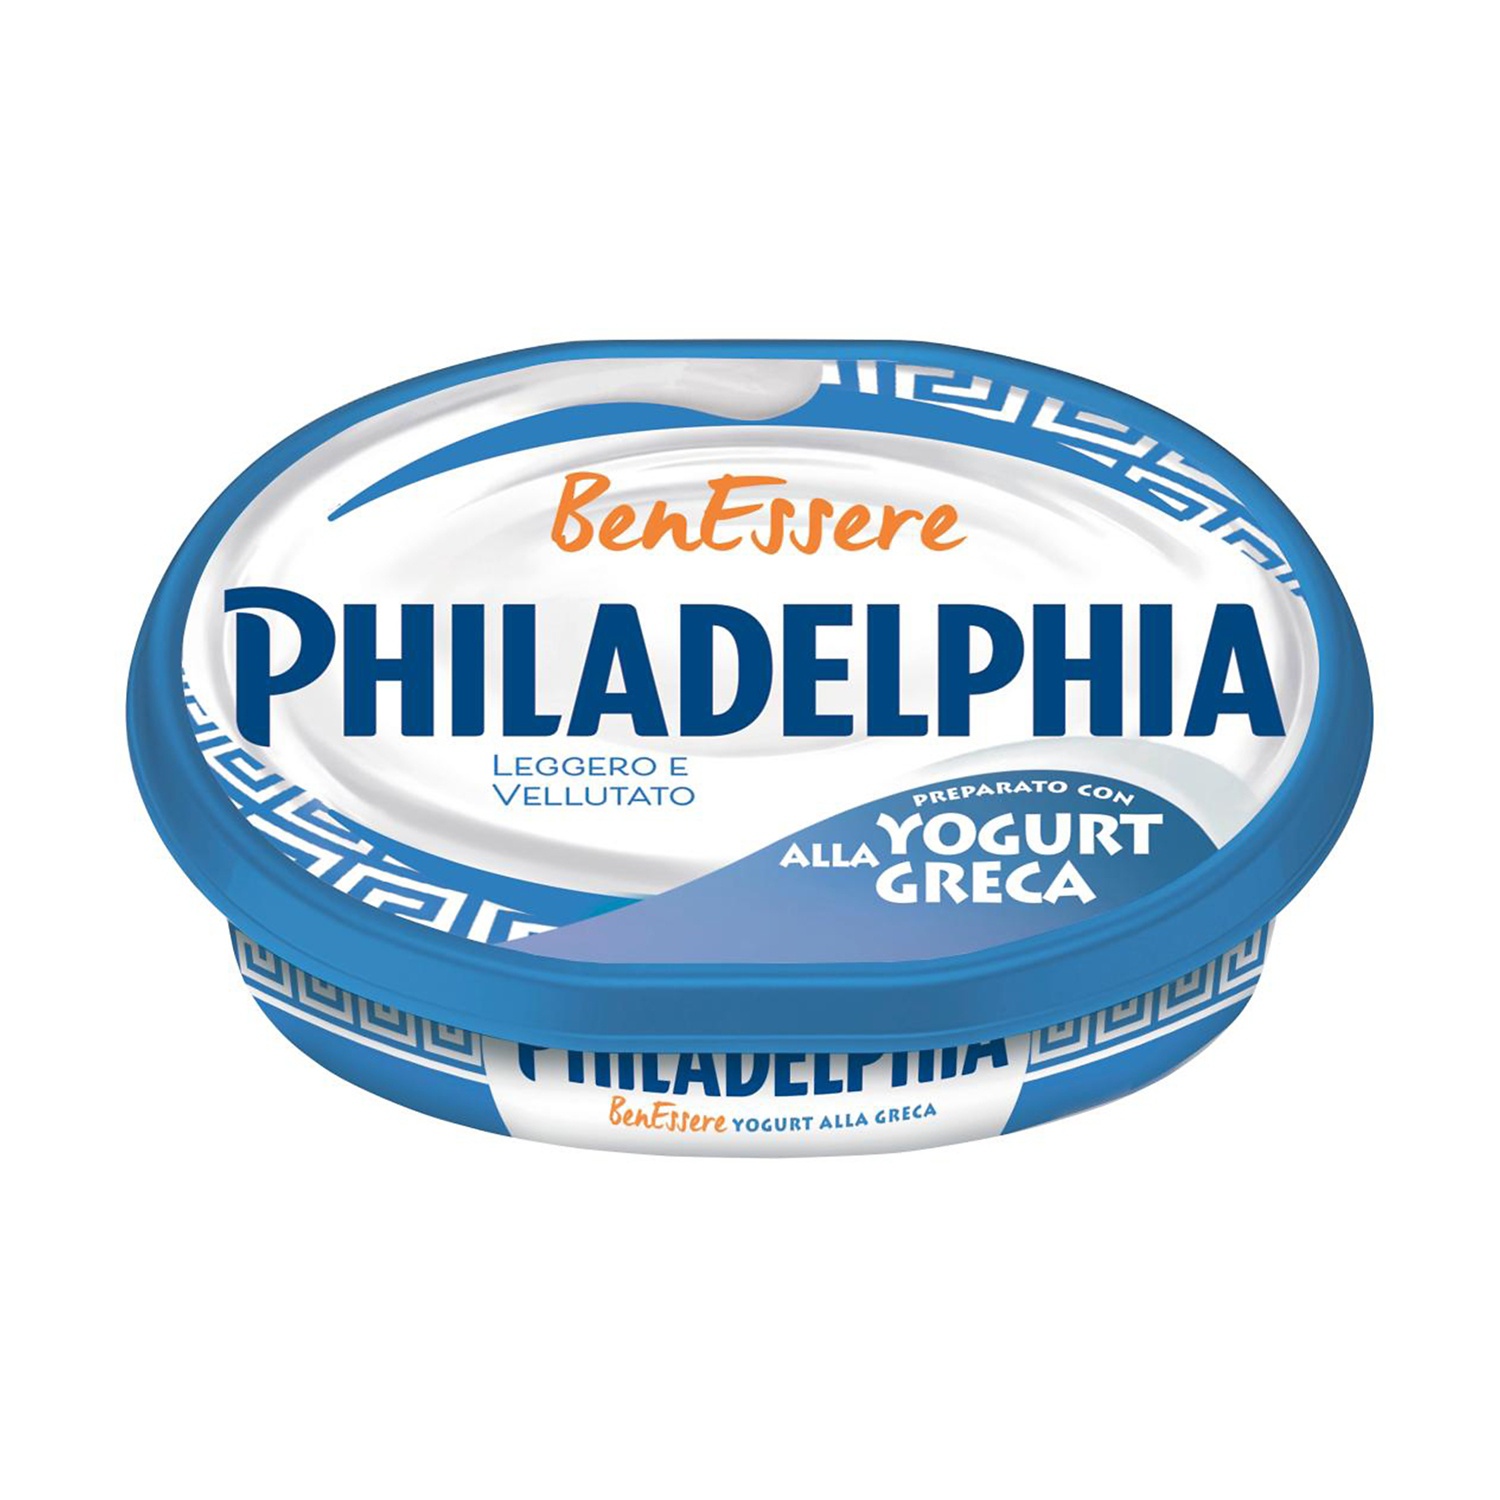 Philadelphia con yogurt alla greca